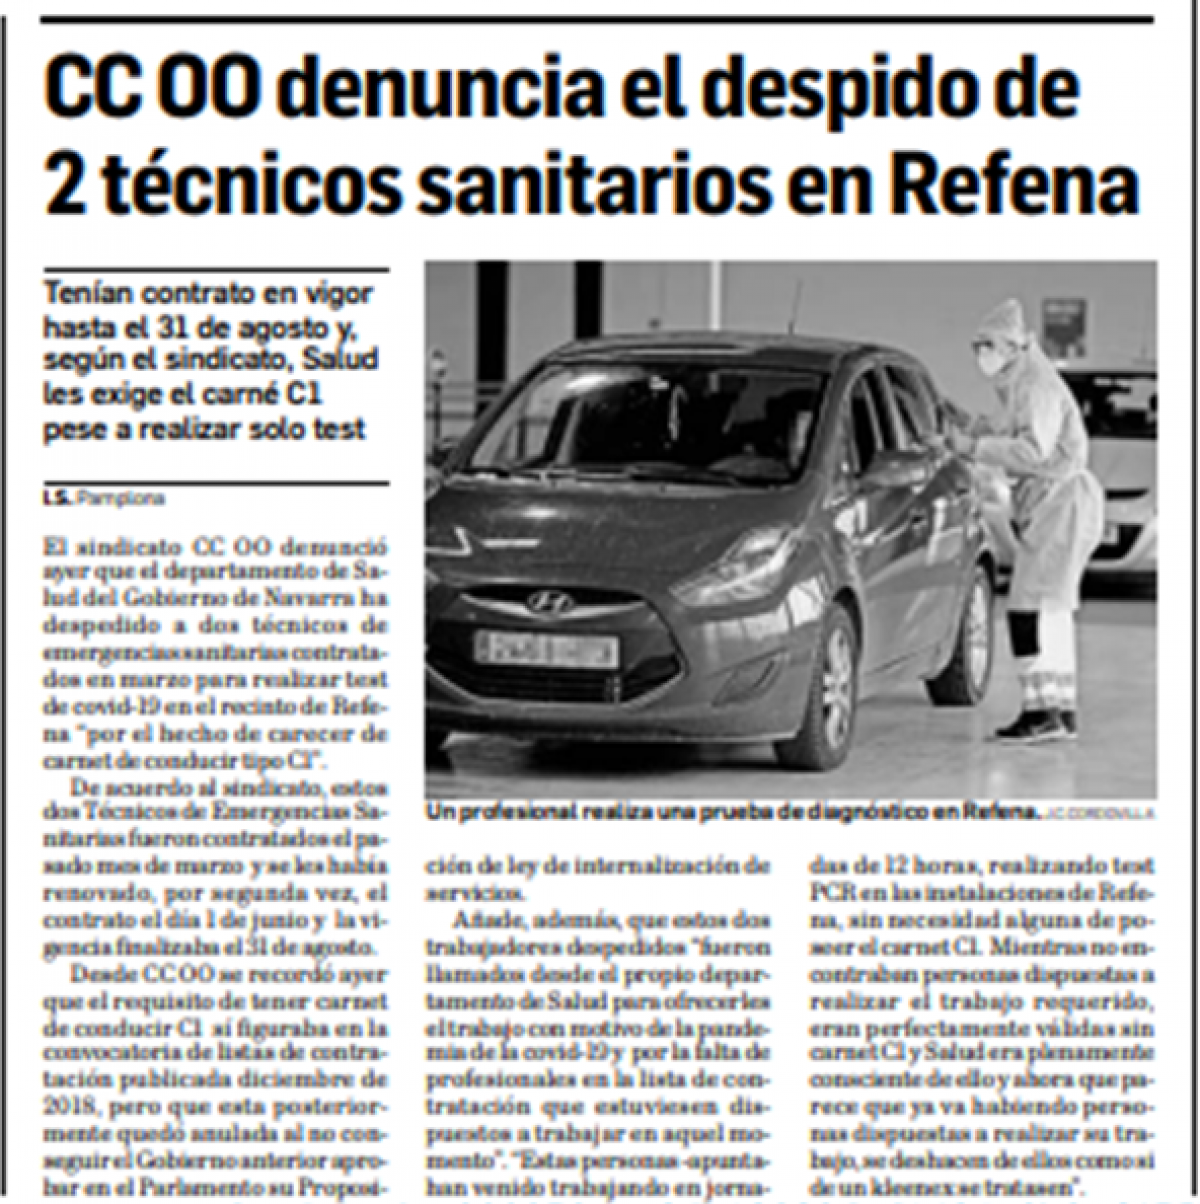 Noticia en Diario de Navarra, 10 de junio de 2020